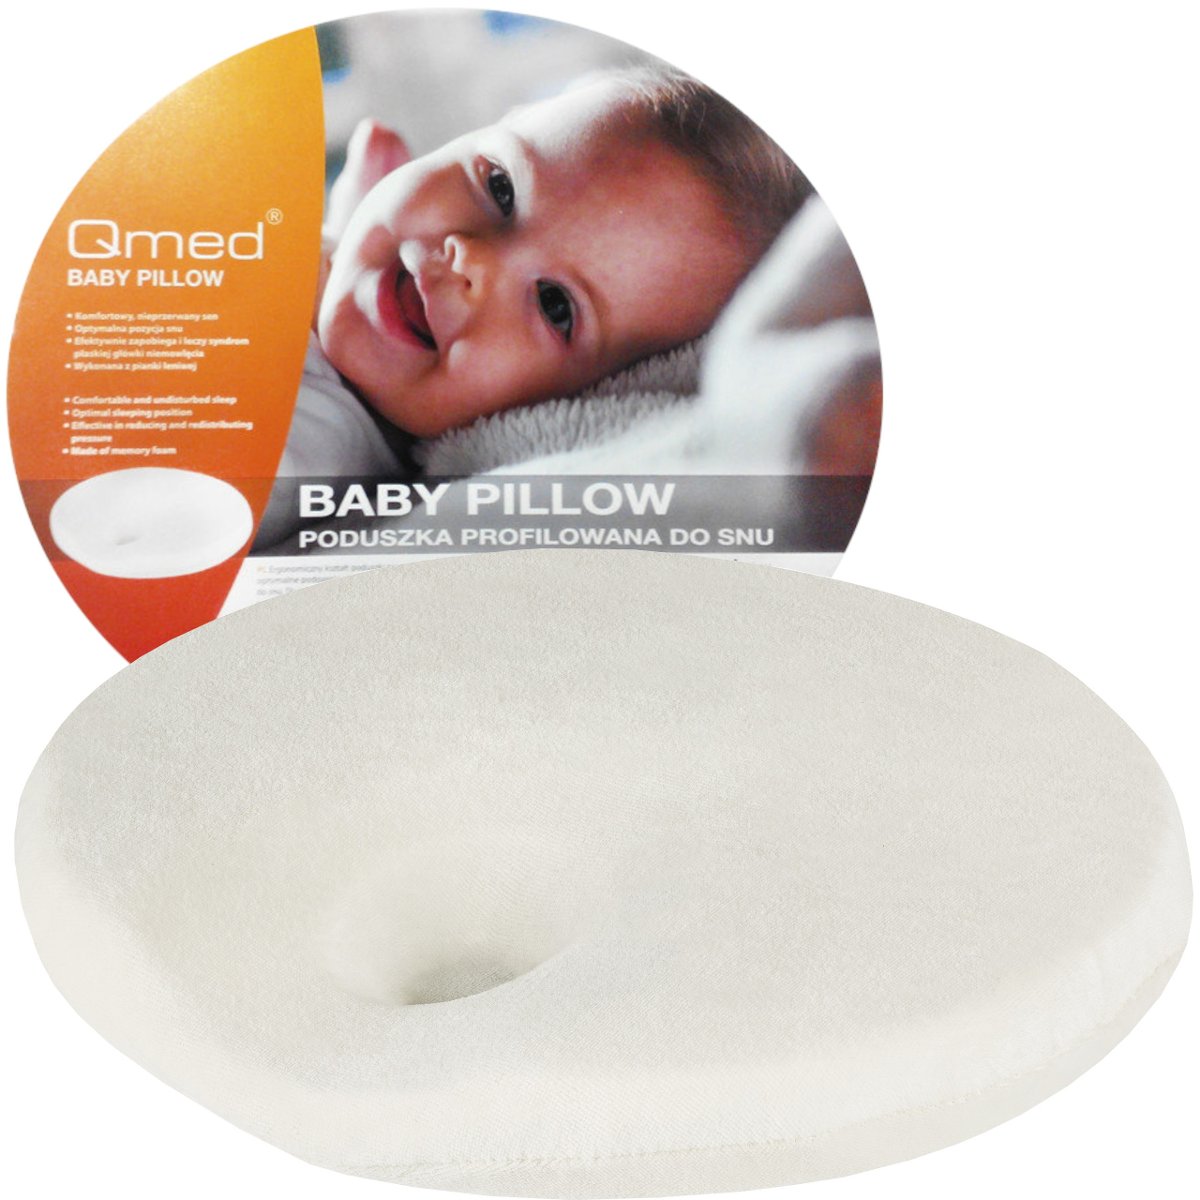 Qmed CERTYFIKOWANA poduszka dla niemowląt - profilowana - ergonomiczna Qmed (baby pillow)